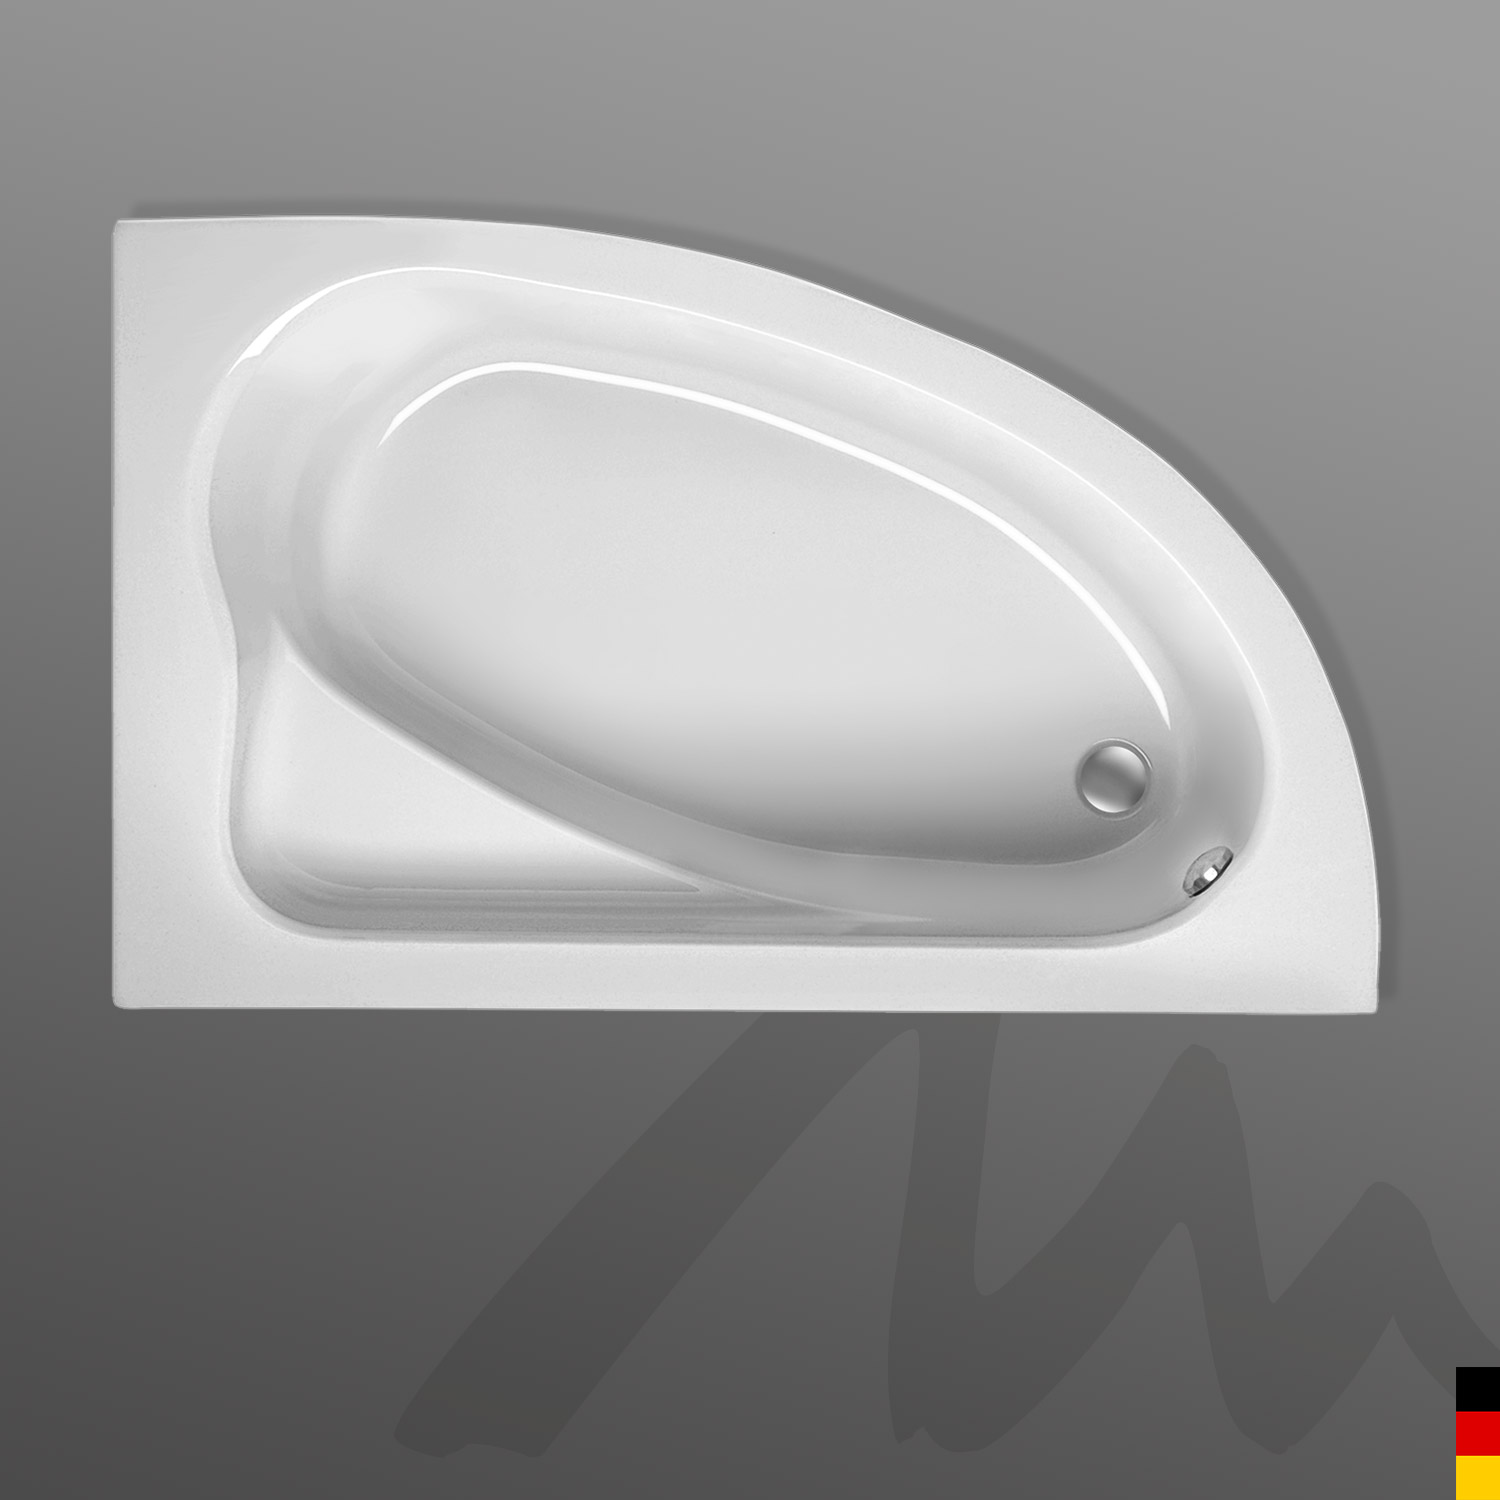 Mauersberger Badewanne Eckwanne Aspera 170/100 links mit Schürze/Panel 1-seitig Front  170x100x45cm  Farbe:weiß